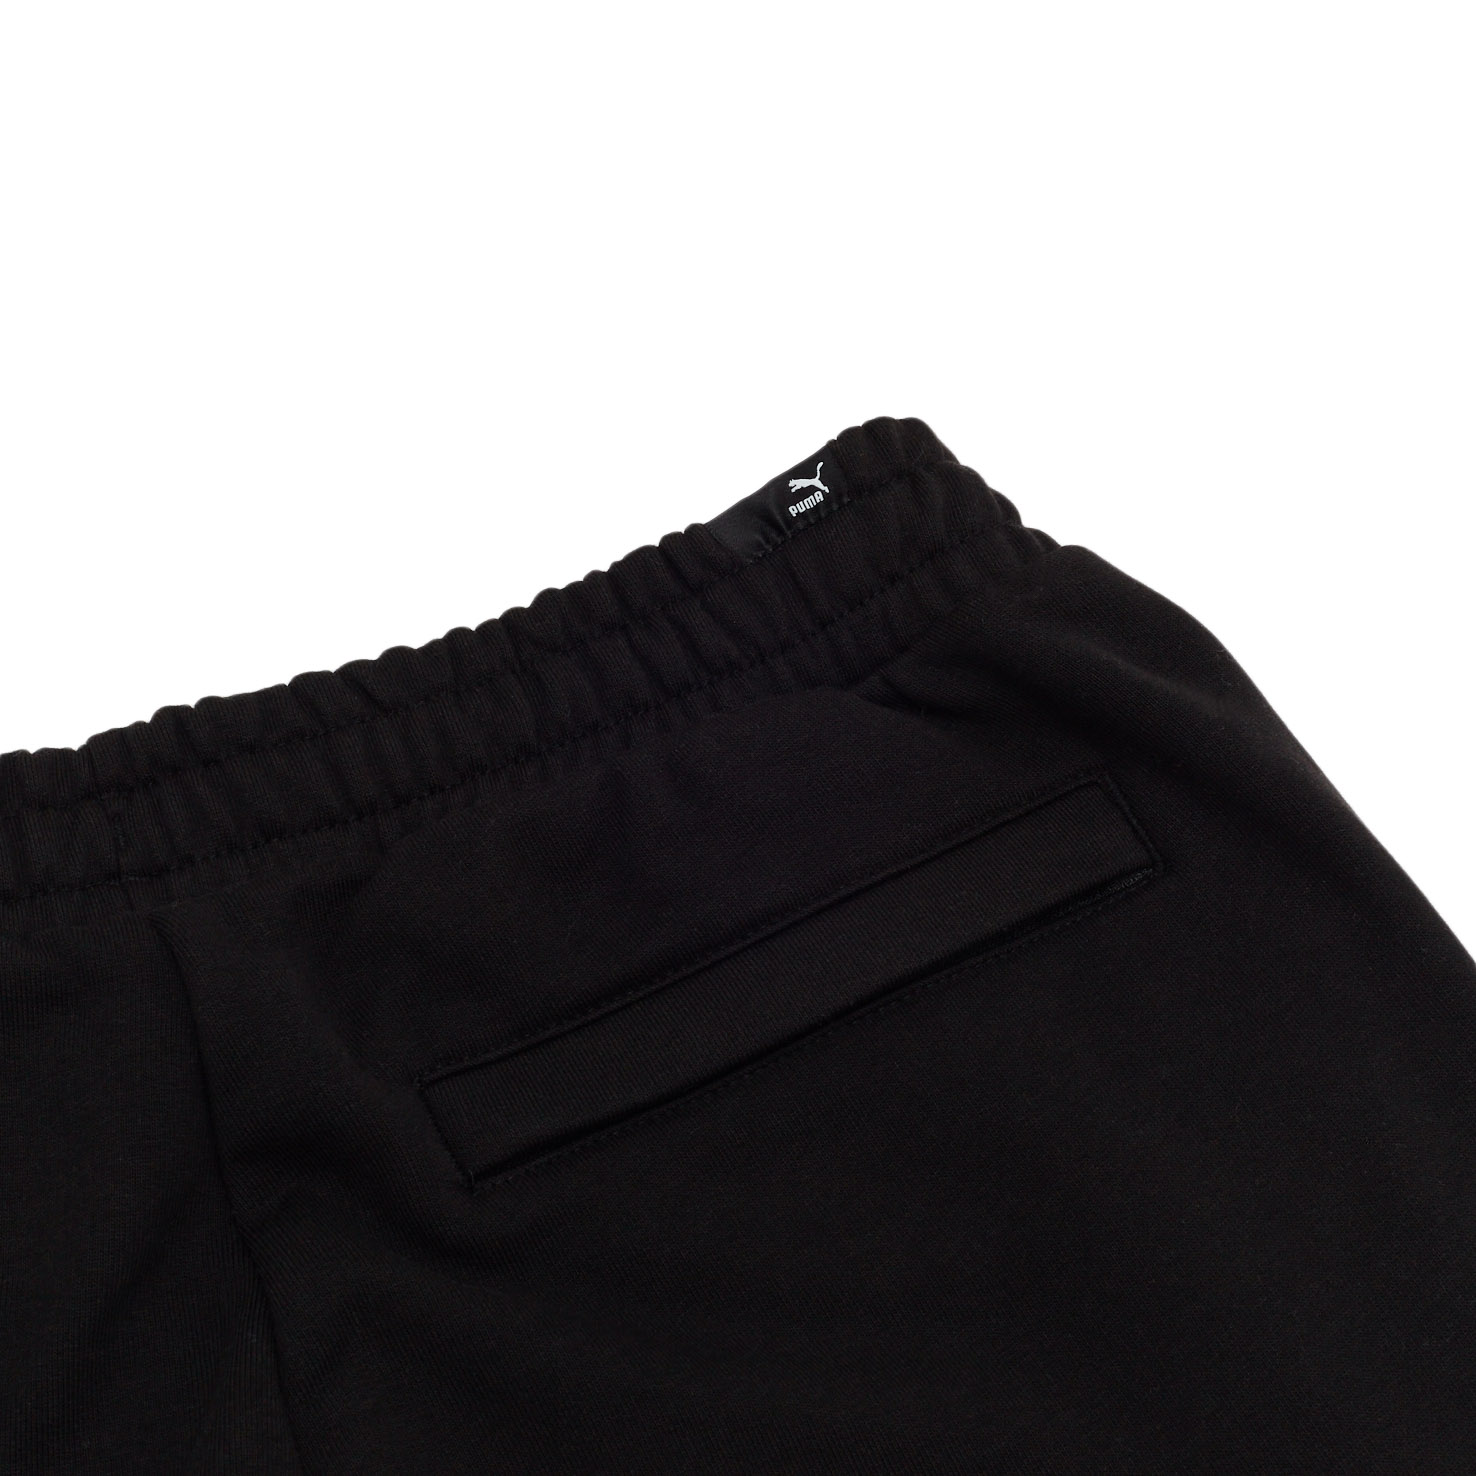 Brand Love Sweatpants PUMA, размер L, цвет черный PM533654 - фото 4